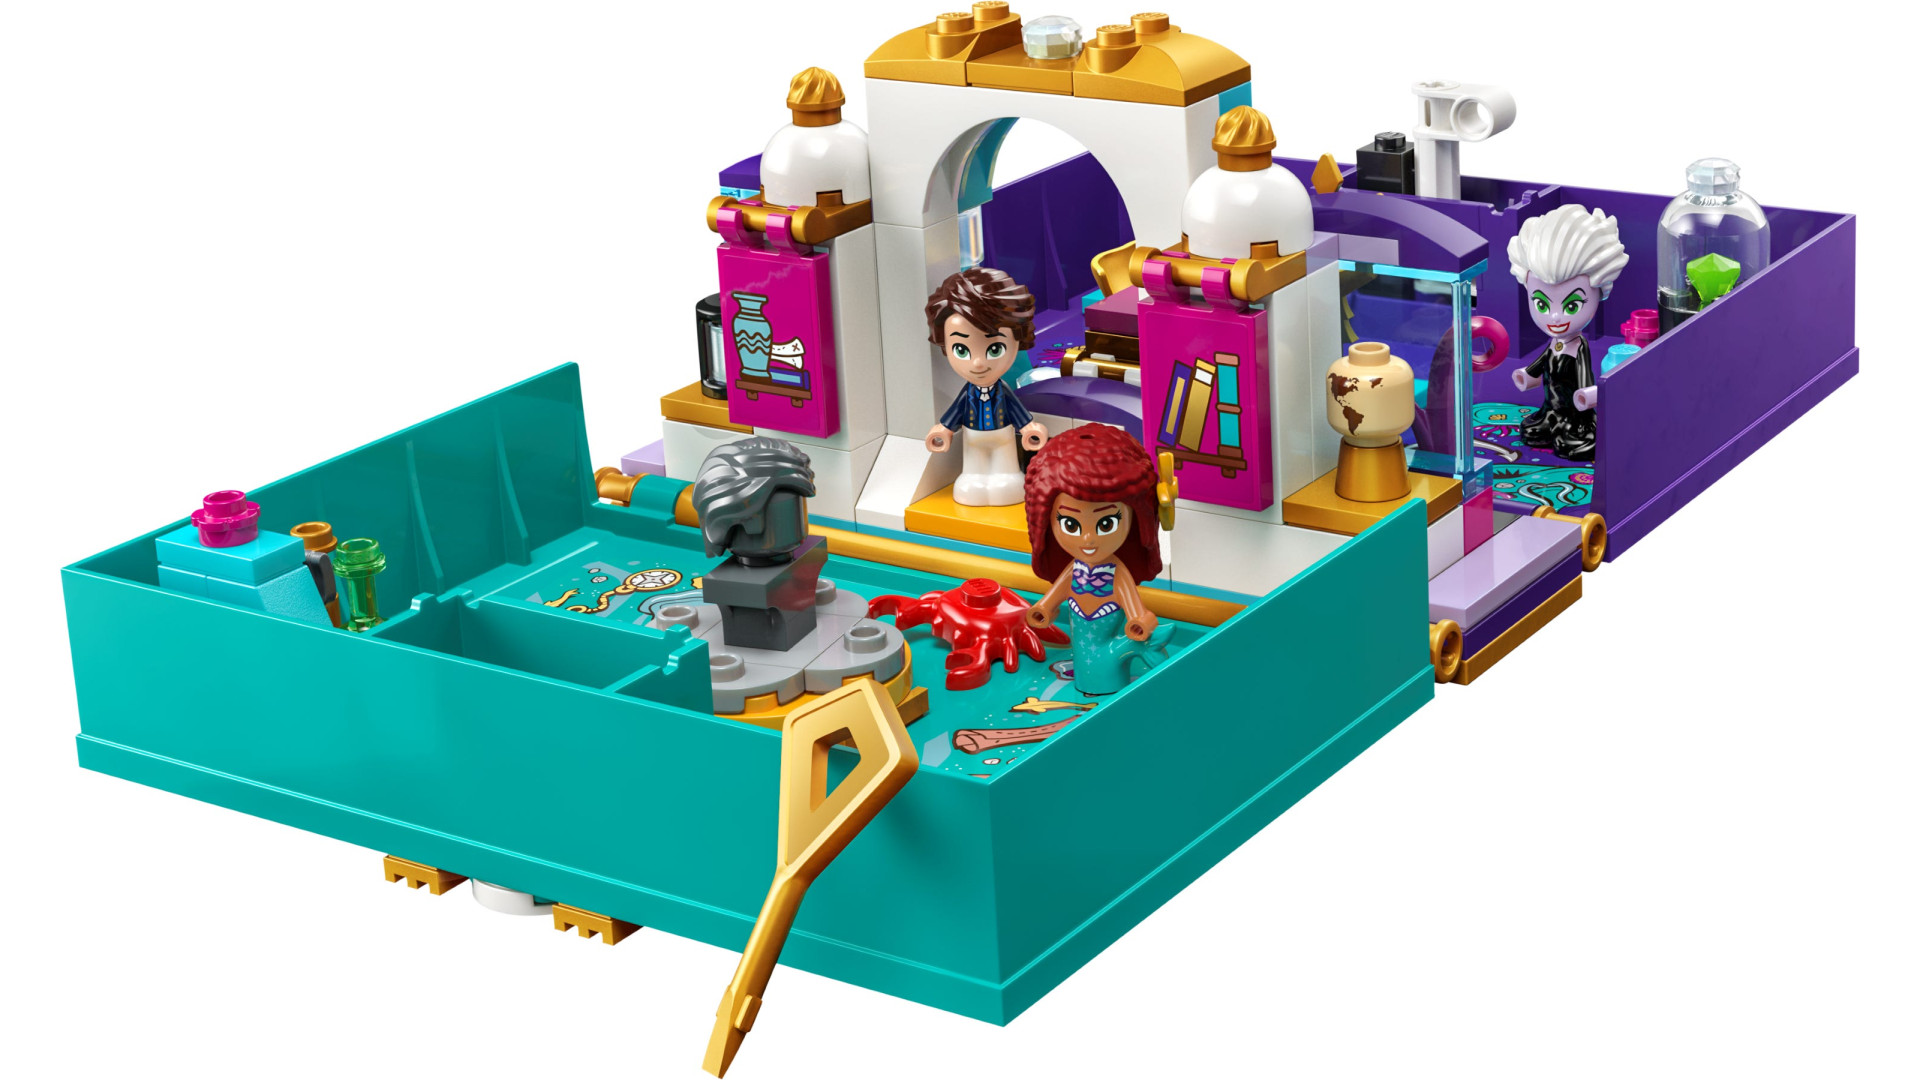 Acheter Le Livre D’histoire : La Petite Sirène - Lego® Disney™ - 43213